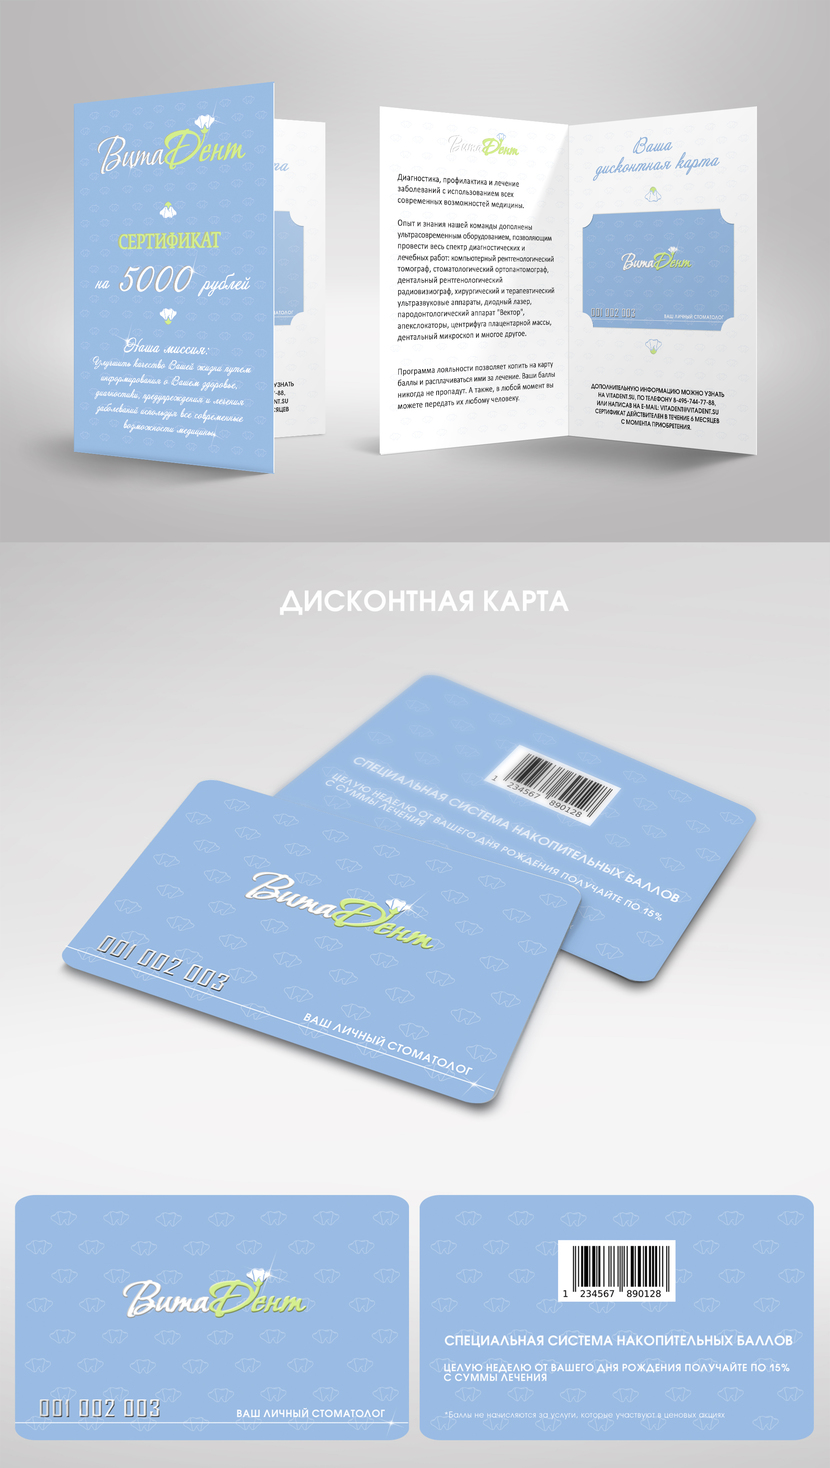 Дизайн дисконтной карты и подарочного сертификата  -  автор Ирина Рязанова